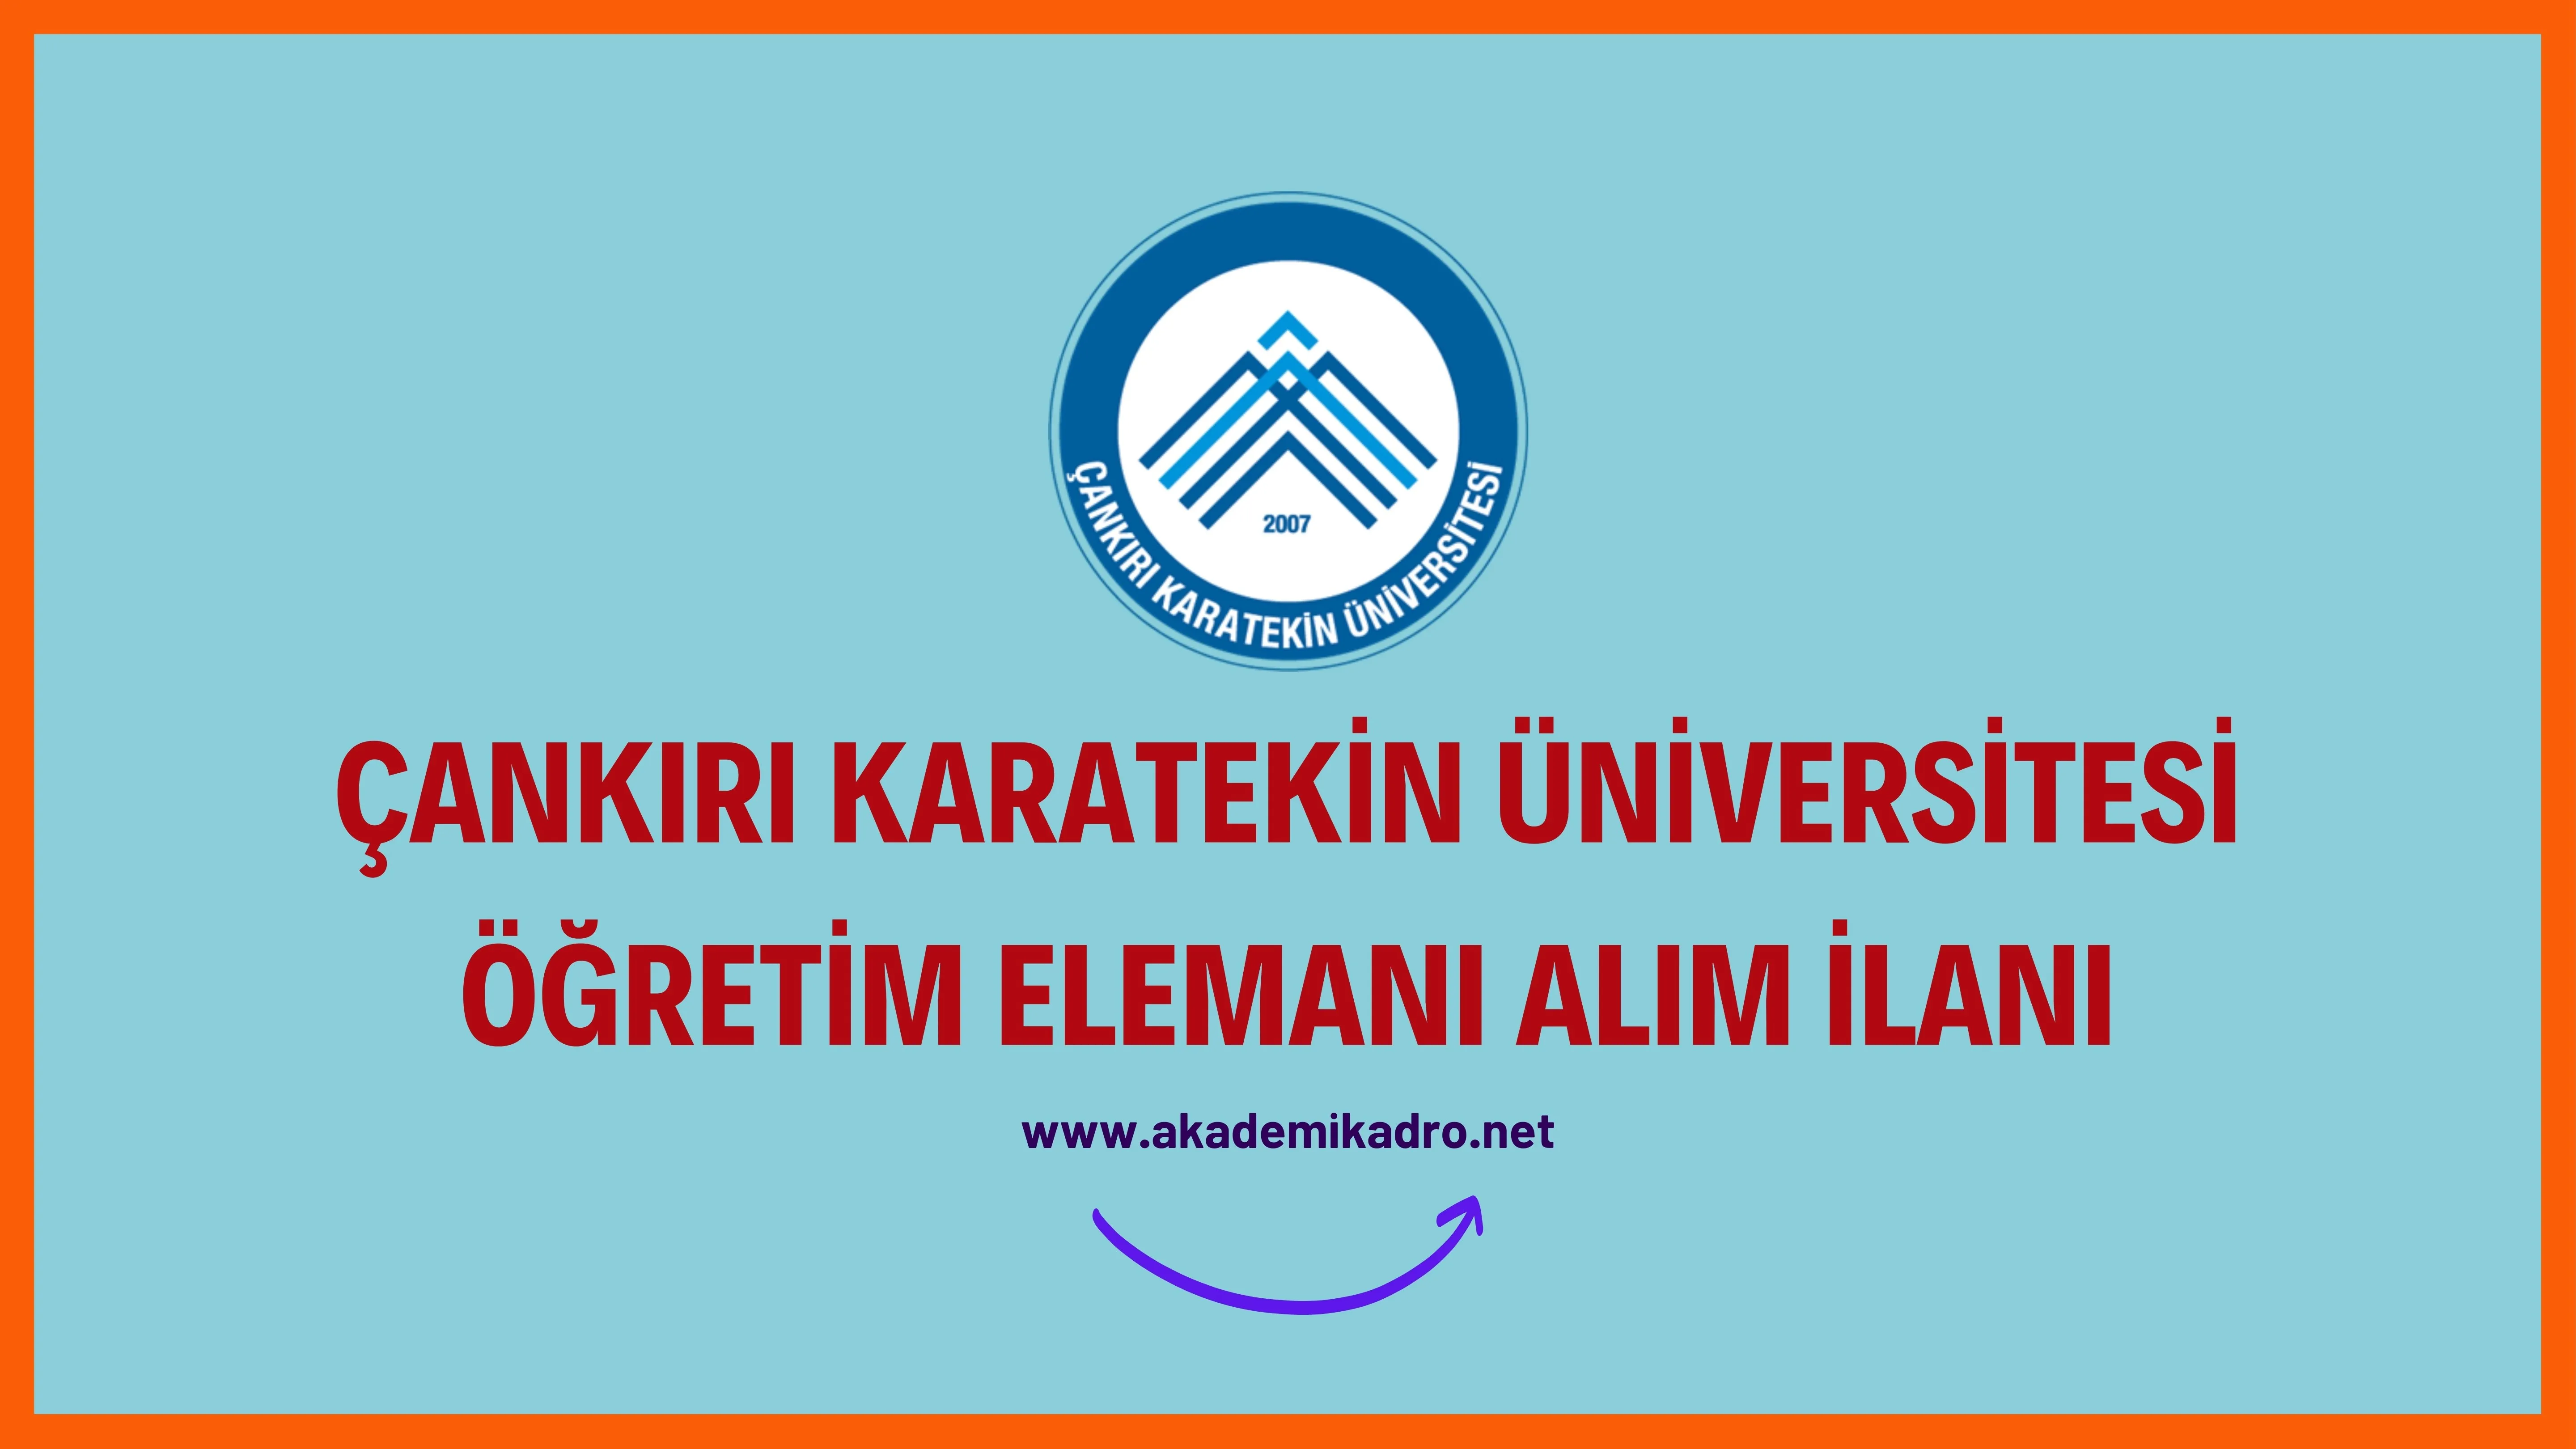 Çankırı Karatekin Üniversitesi Araştırma görevlisi ve öğretim üyesi olmak üzere 18 Öğretim elemanı alacak.